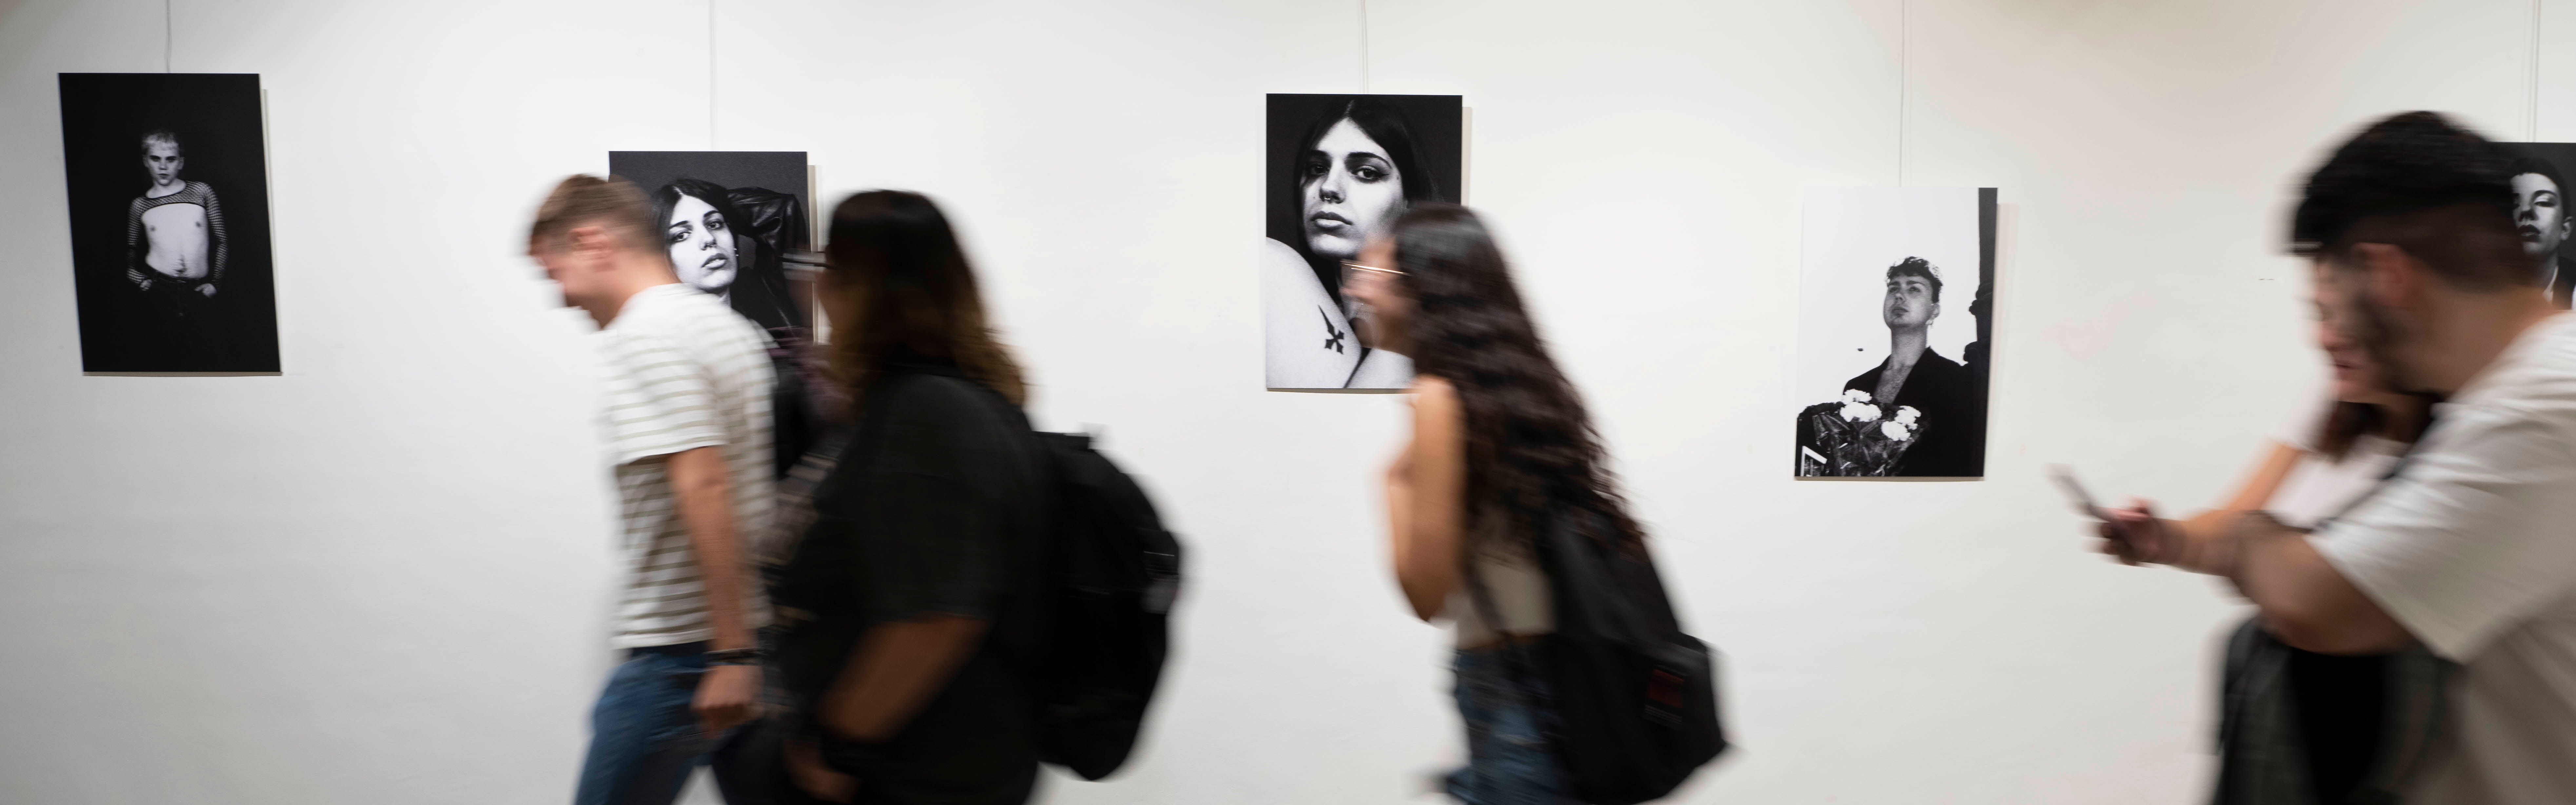 La Facultad de Comunicación y Documentación expone el proyecto fotográfico 'Vulnerabilidad queer'